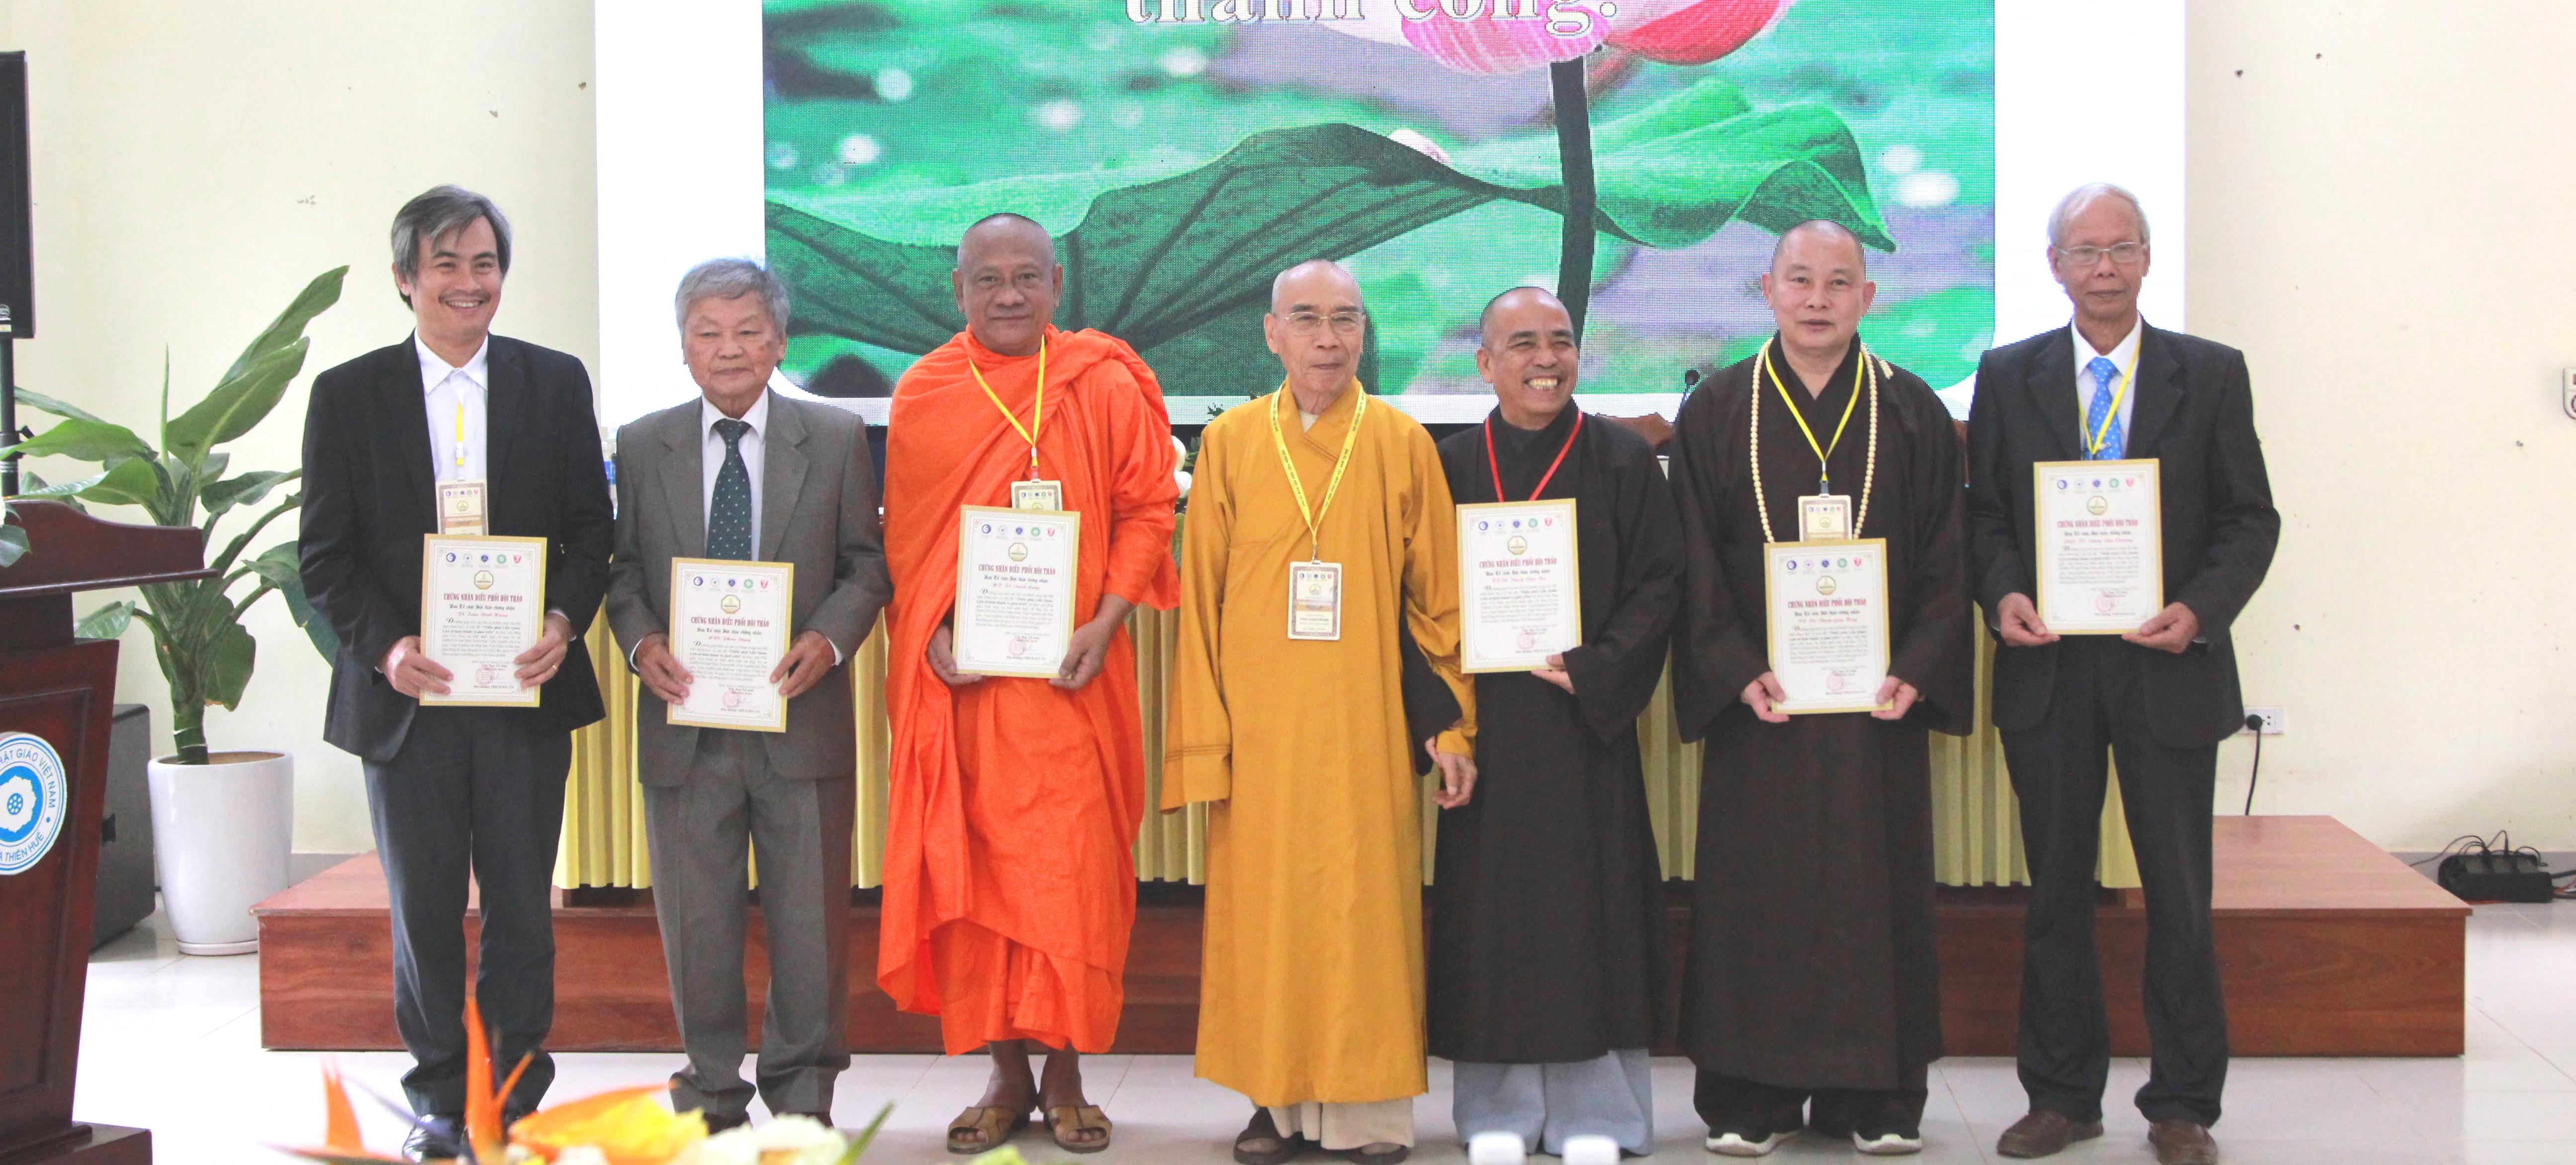 Hội thảo chuyên đề về “Thiền phái Liễu Quán: Lịch sử hình thành và phát triển”